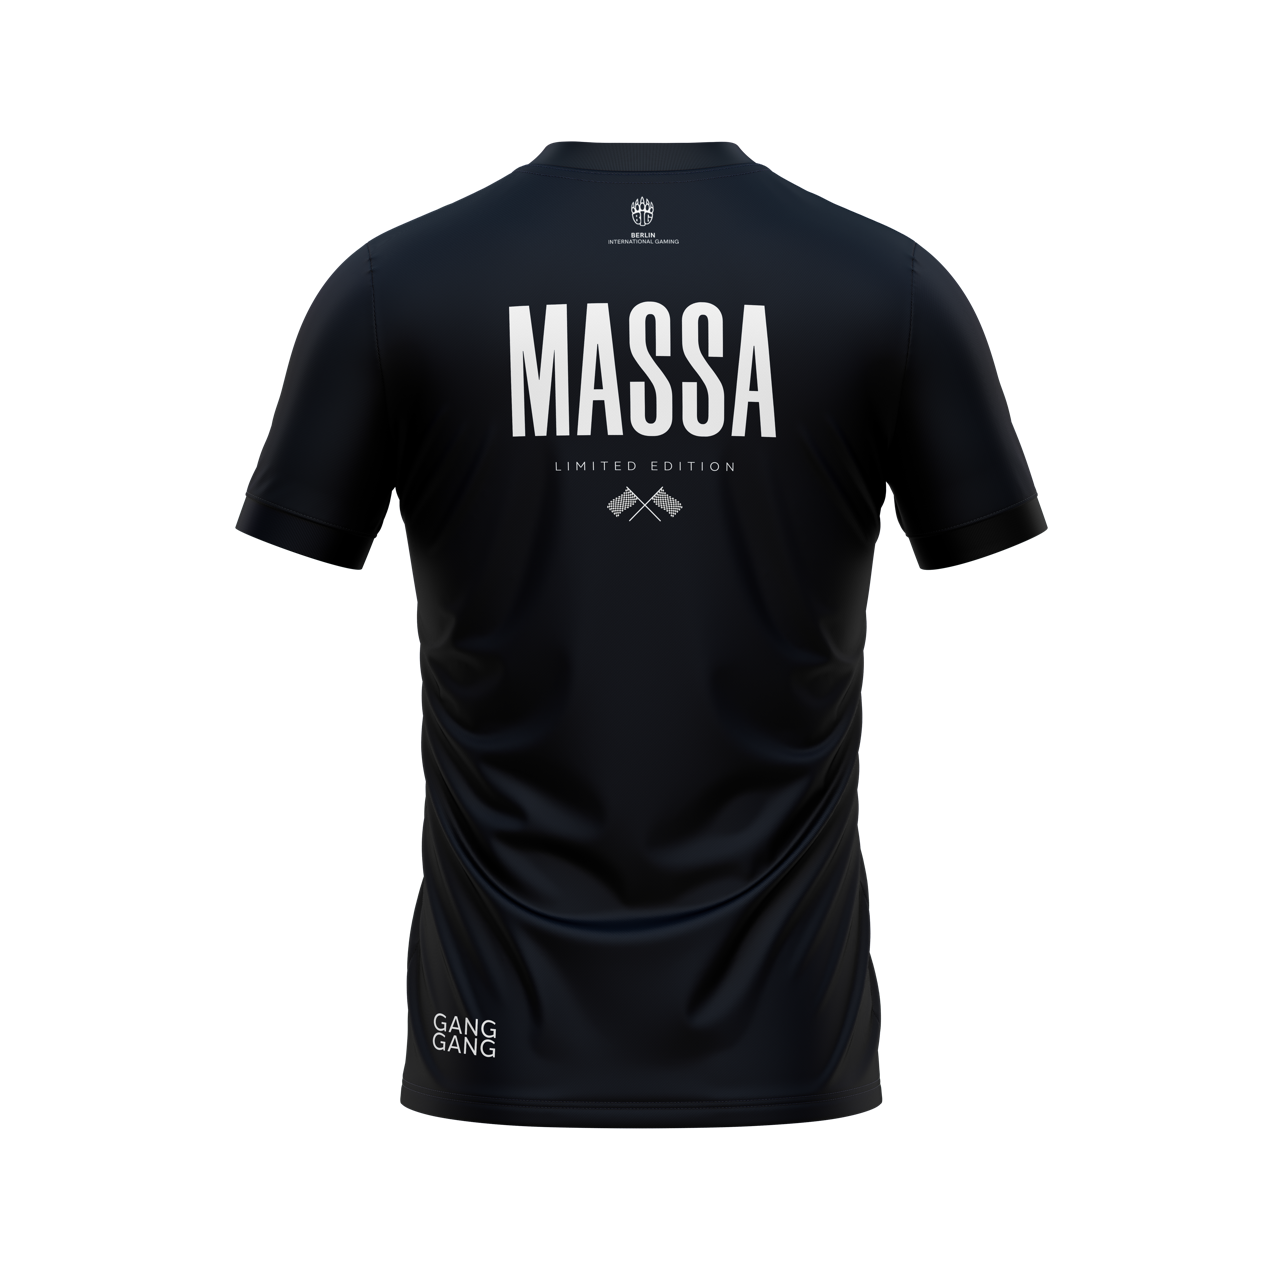 BIG Massa Ltd. Edition Jersey